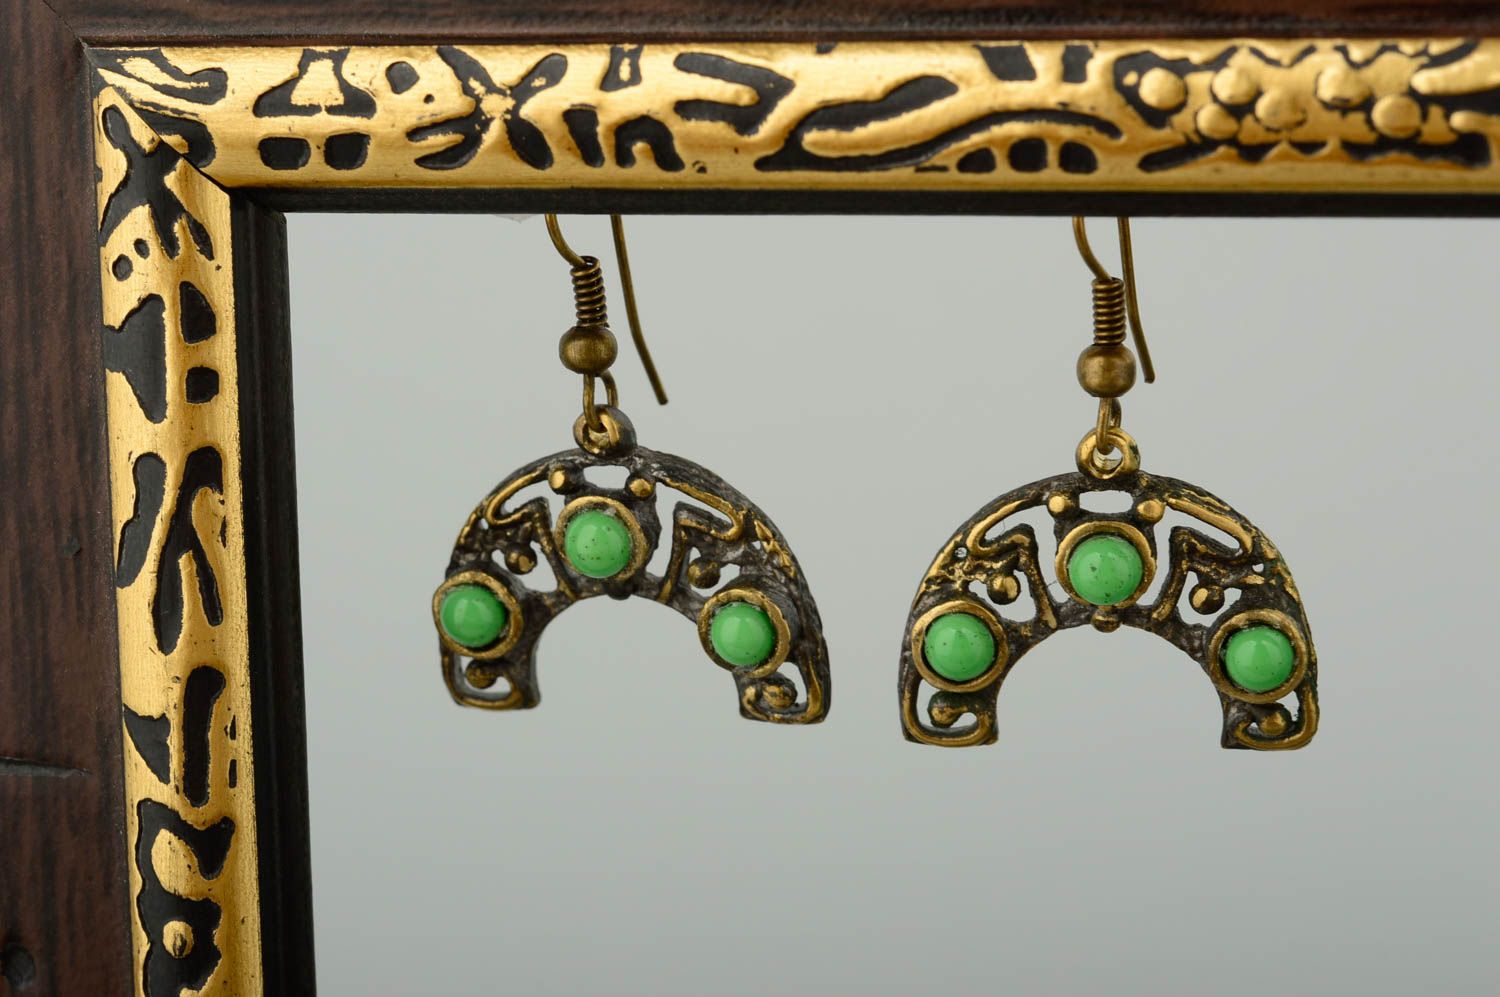 Украшение ручной работы большие серьги авторские украшение из бронзы с камнями фото 1